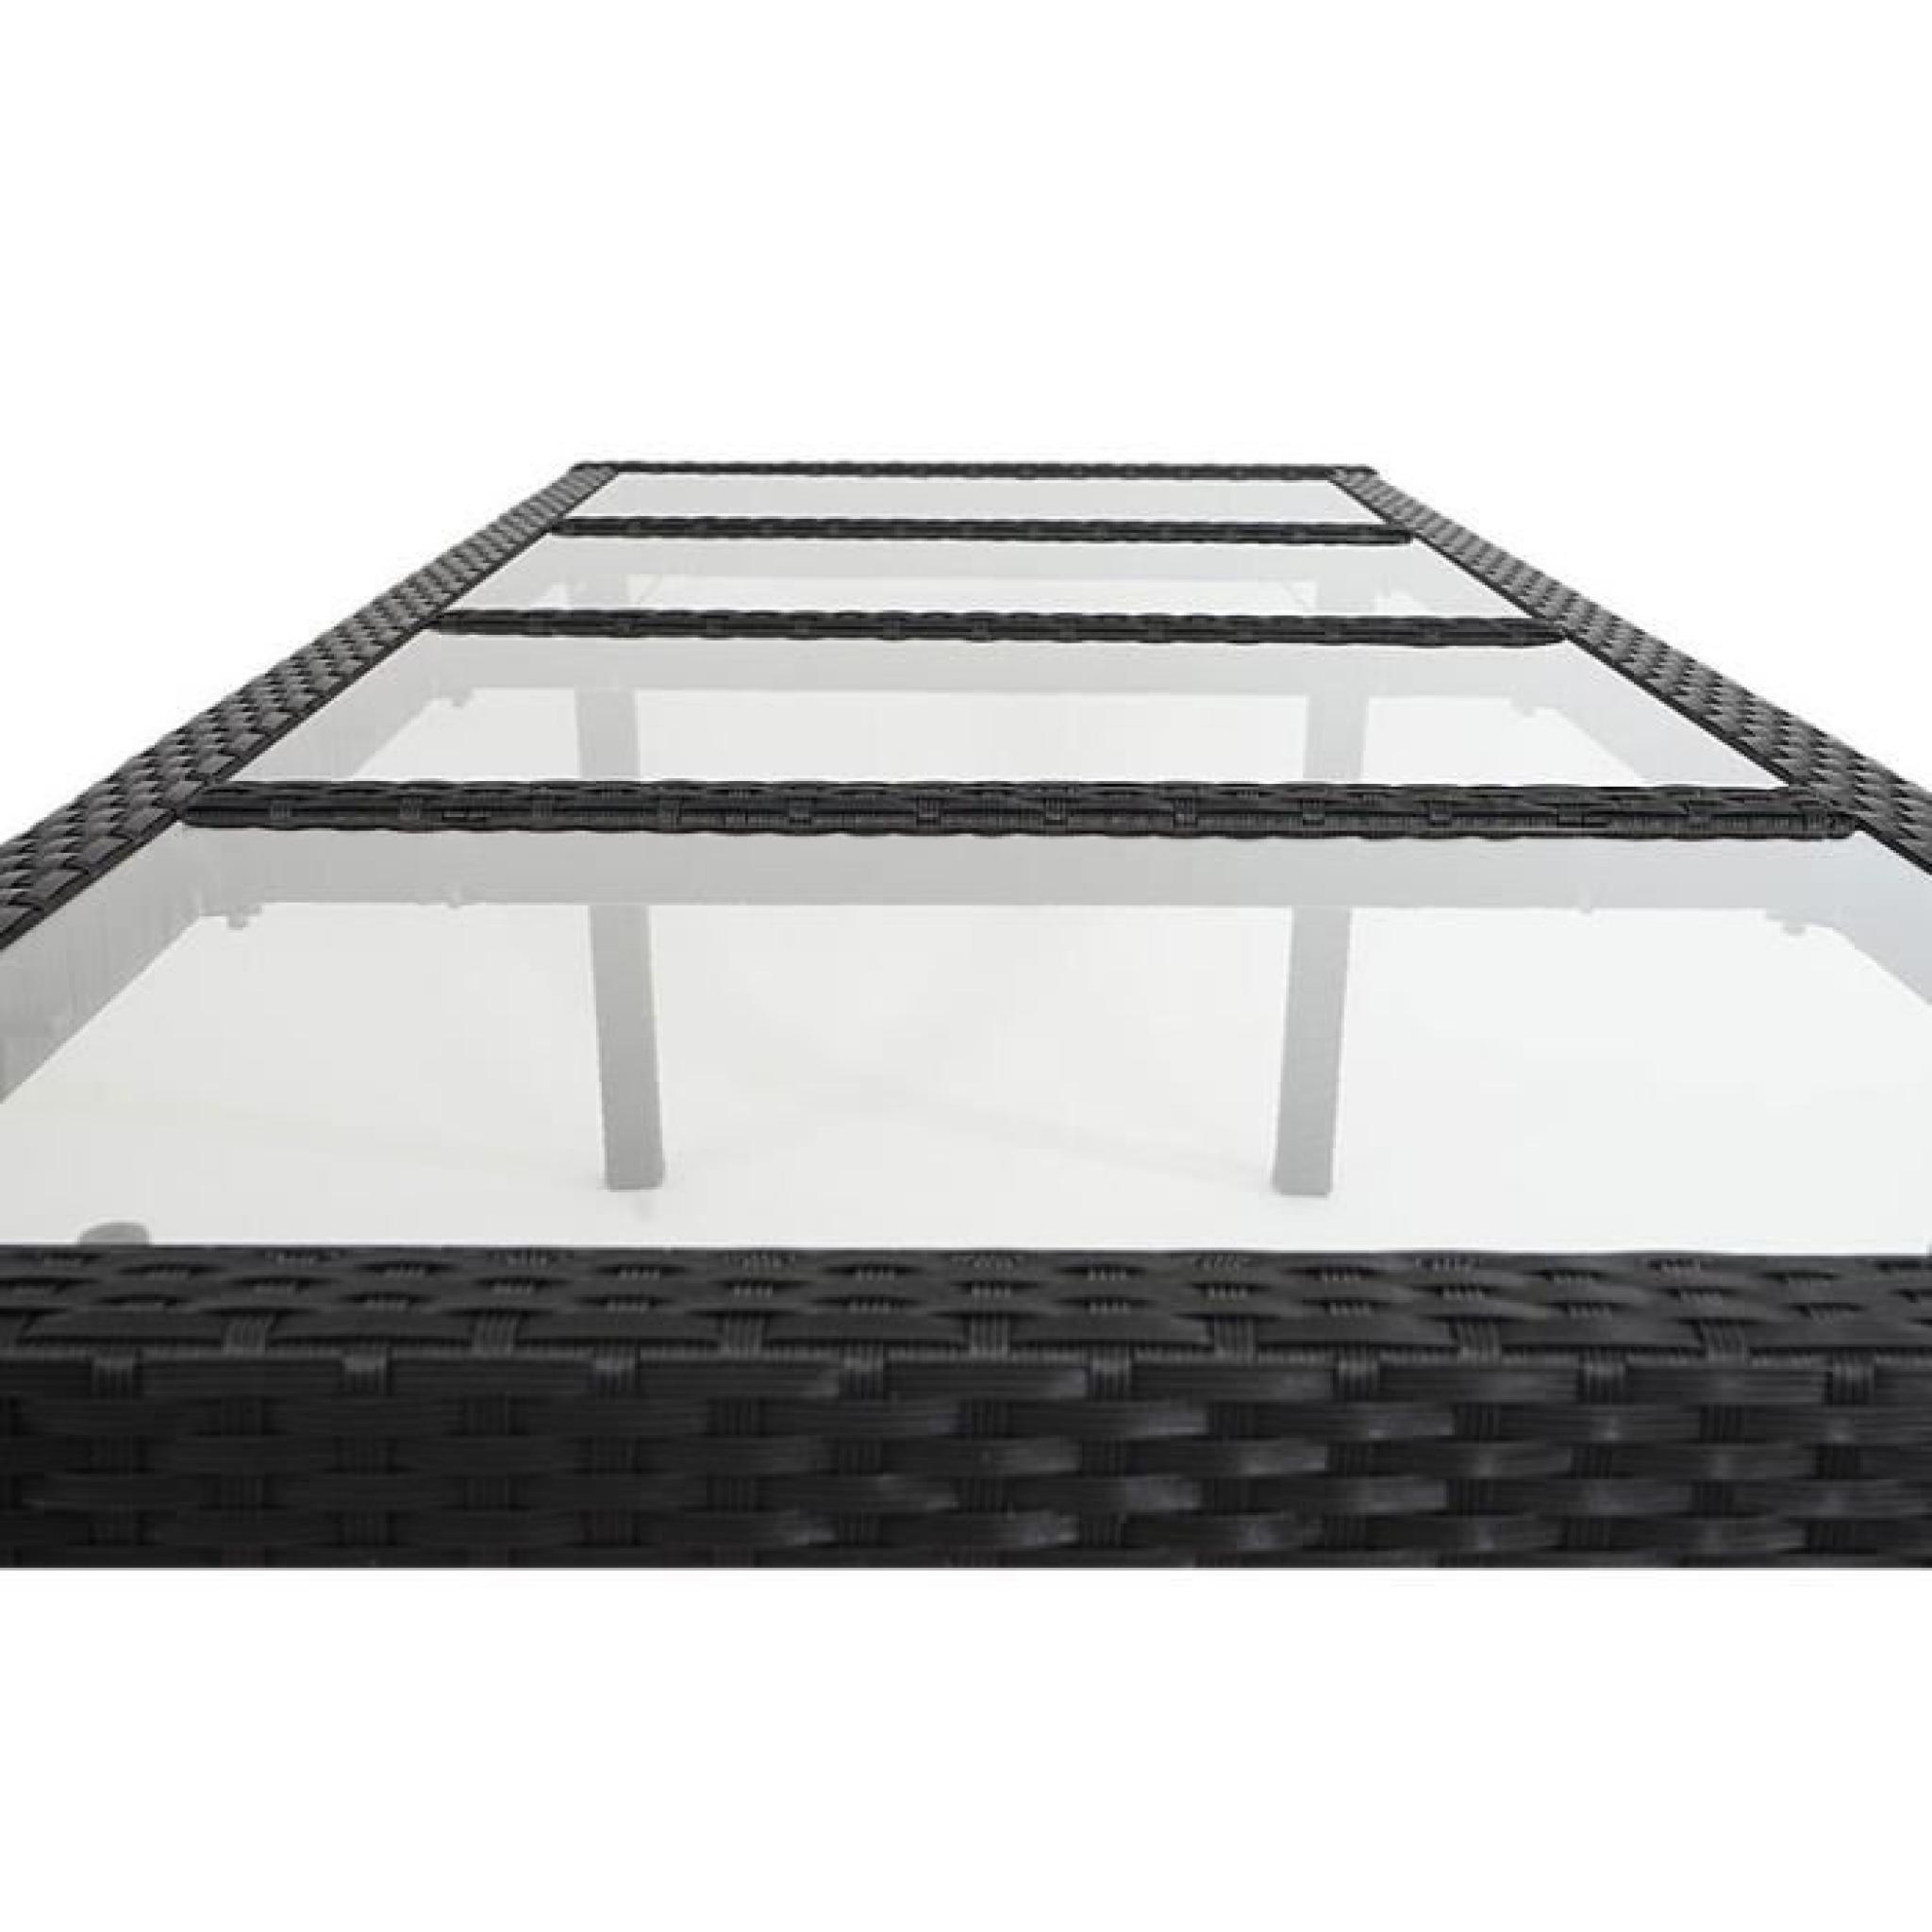 Table de jardin 200 x 80 cm, plateaux en verre, cadre en aluminium, coloris anthracite pas cher